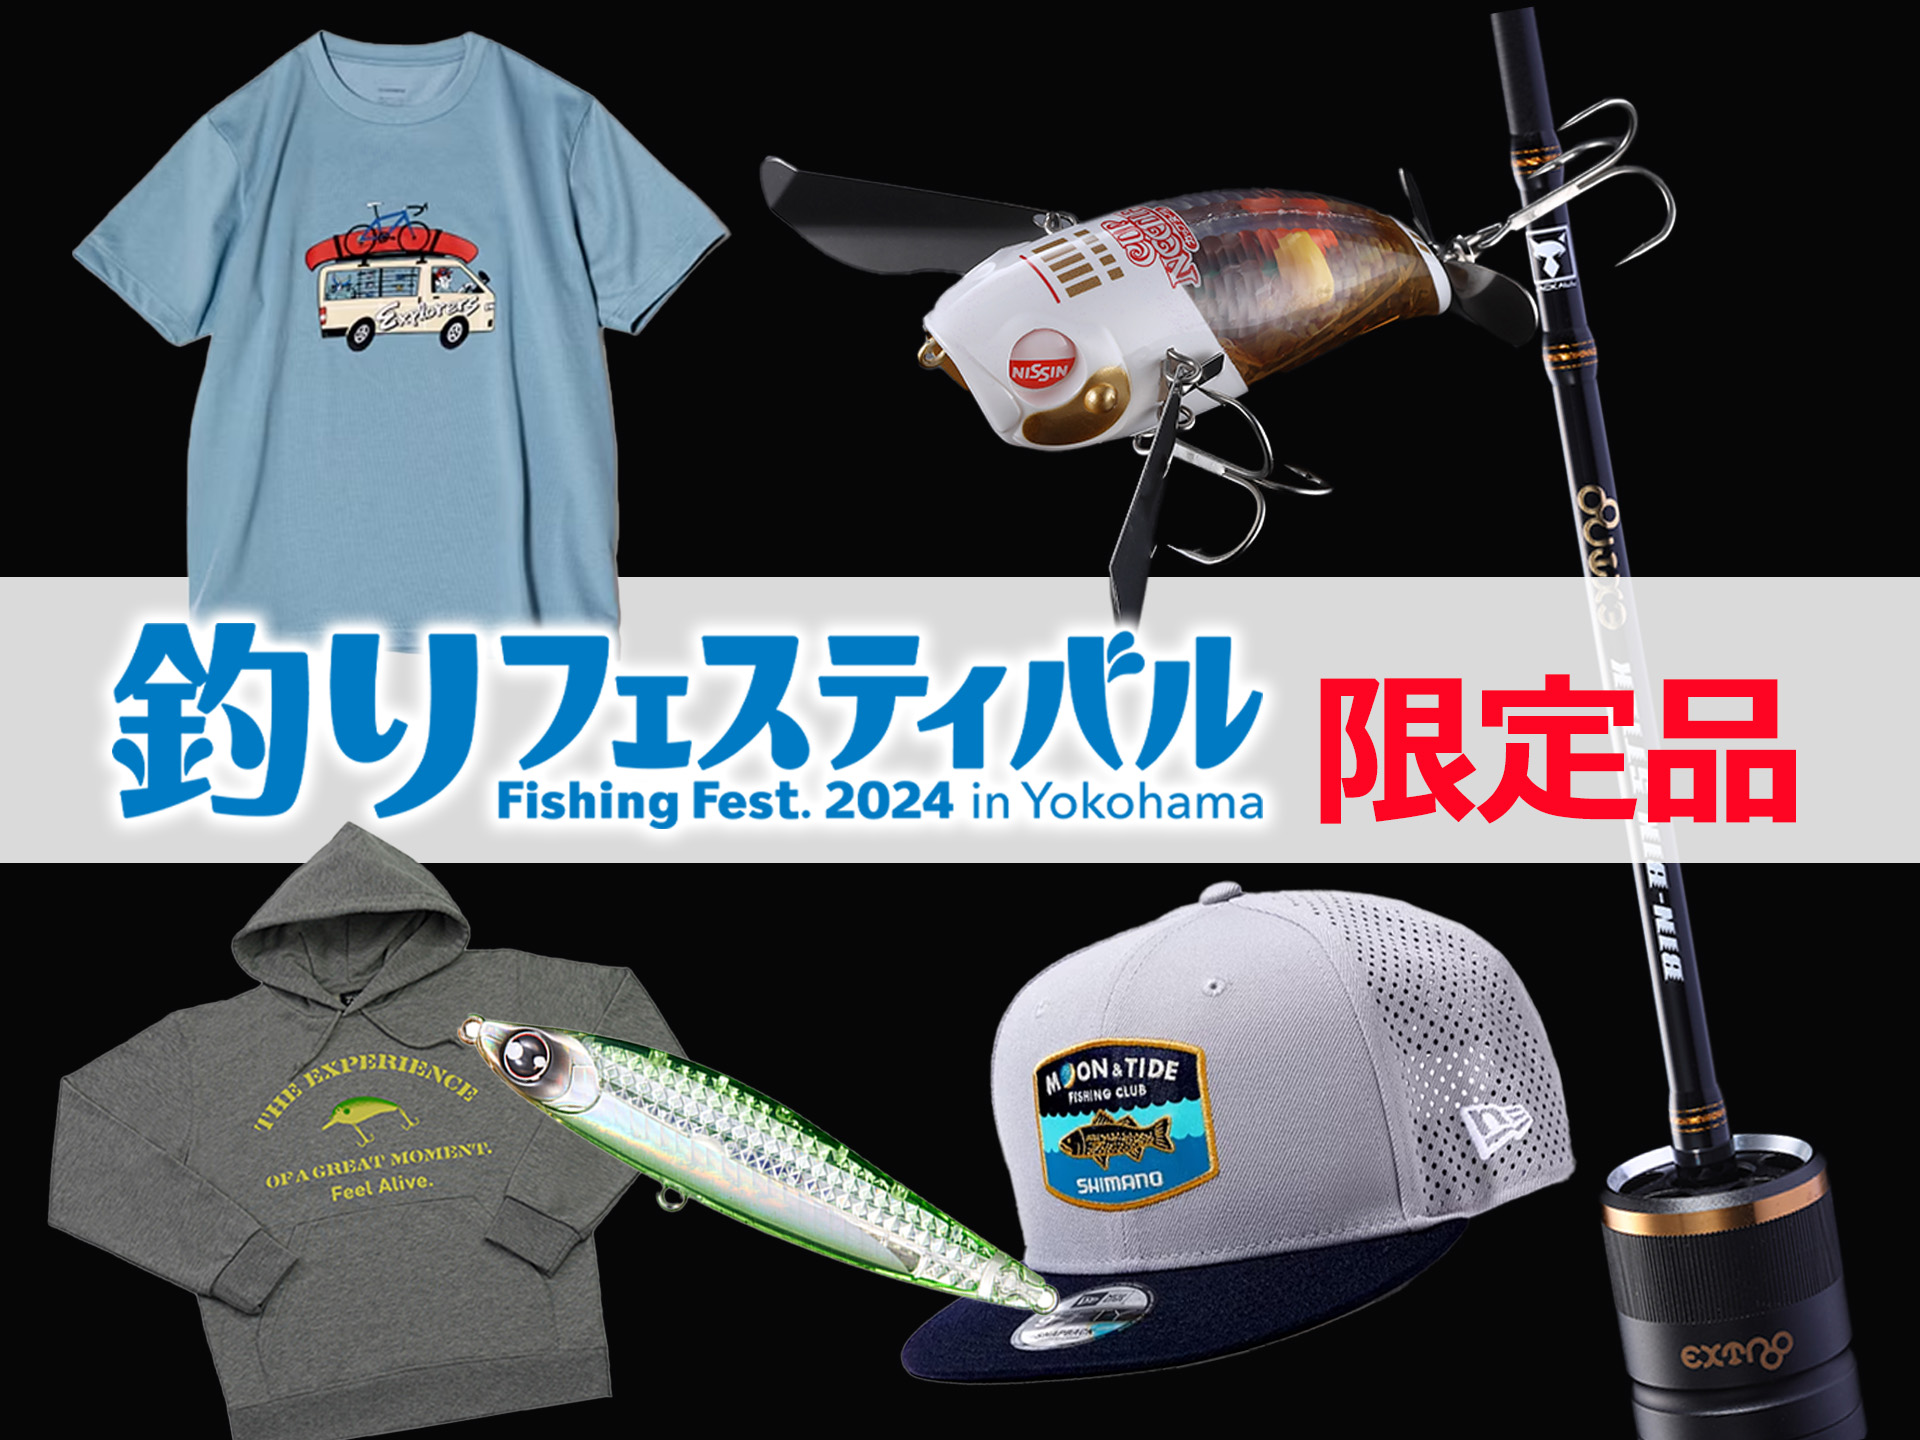 2024 横浜釣りフェスティバル 限定 スライドスイマー250 | www ...